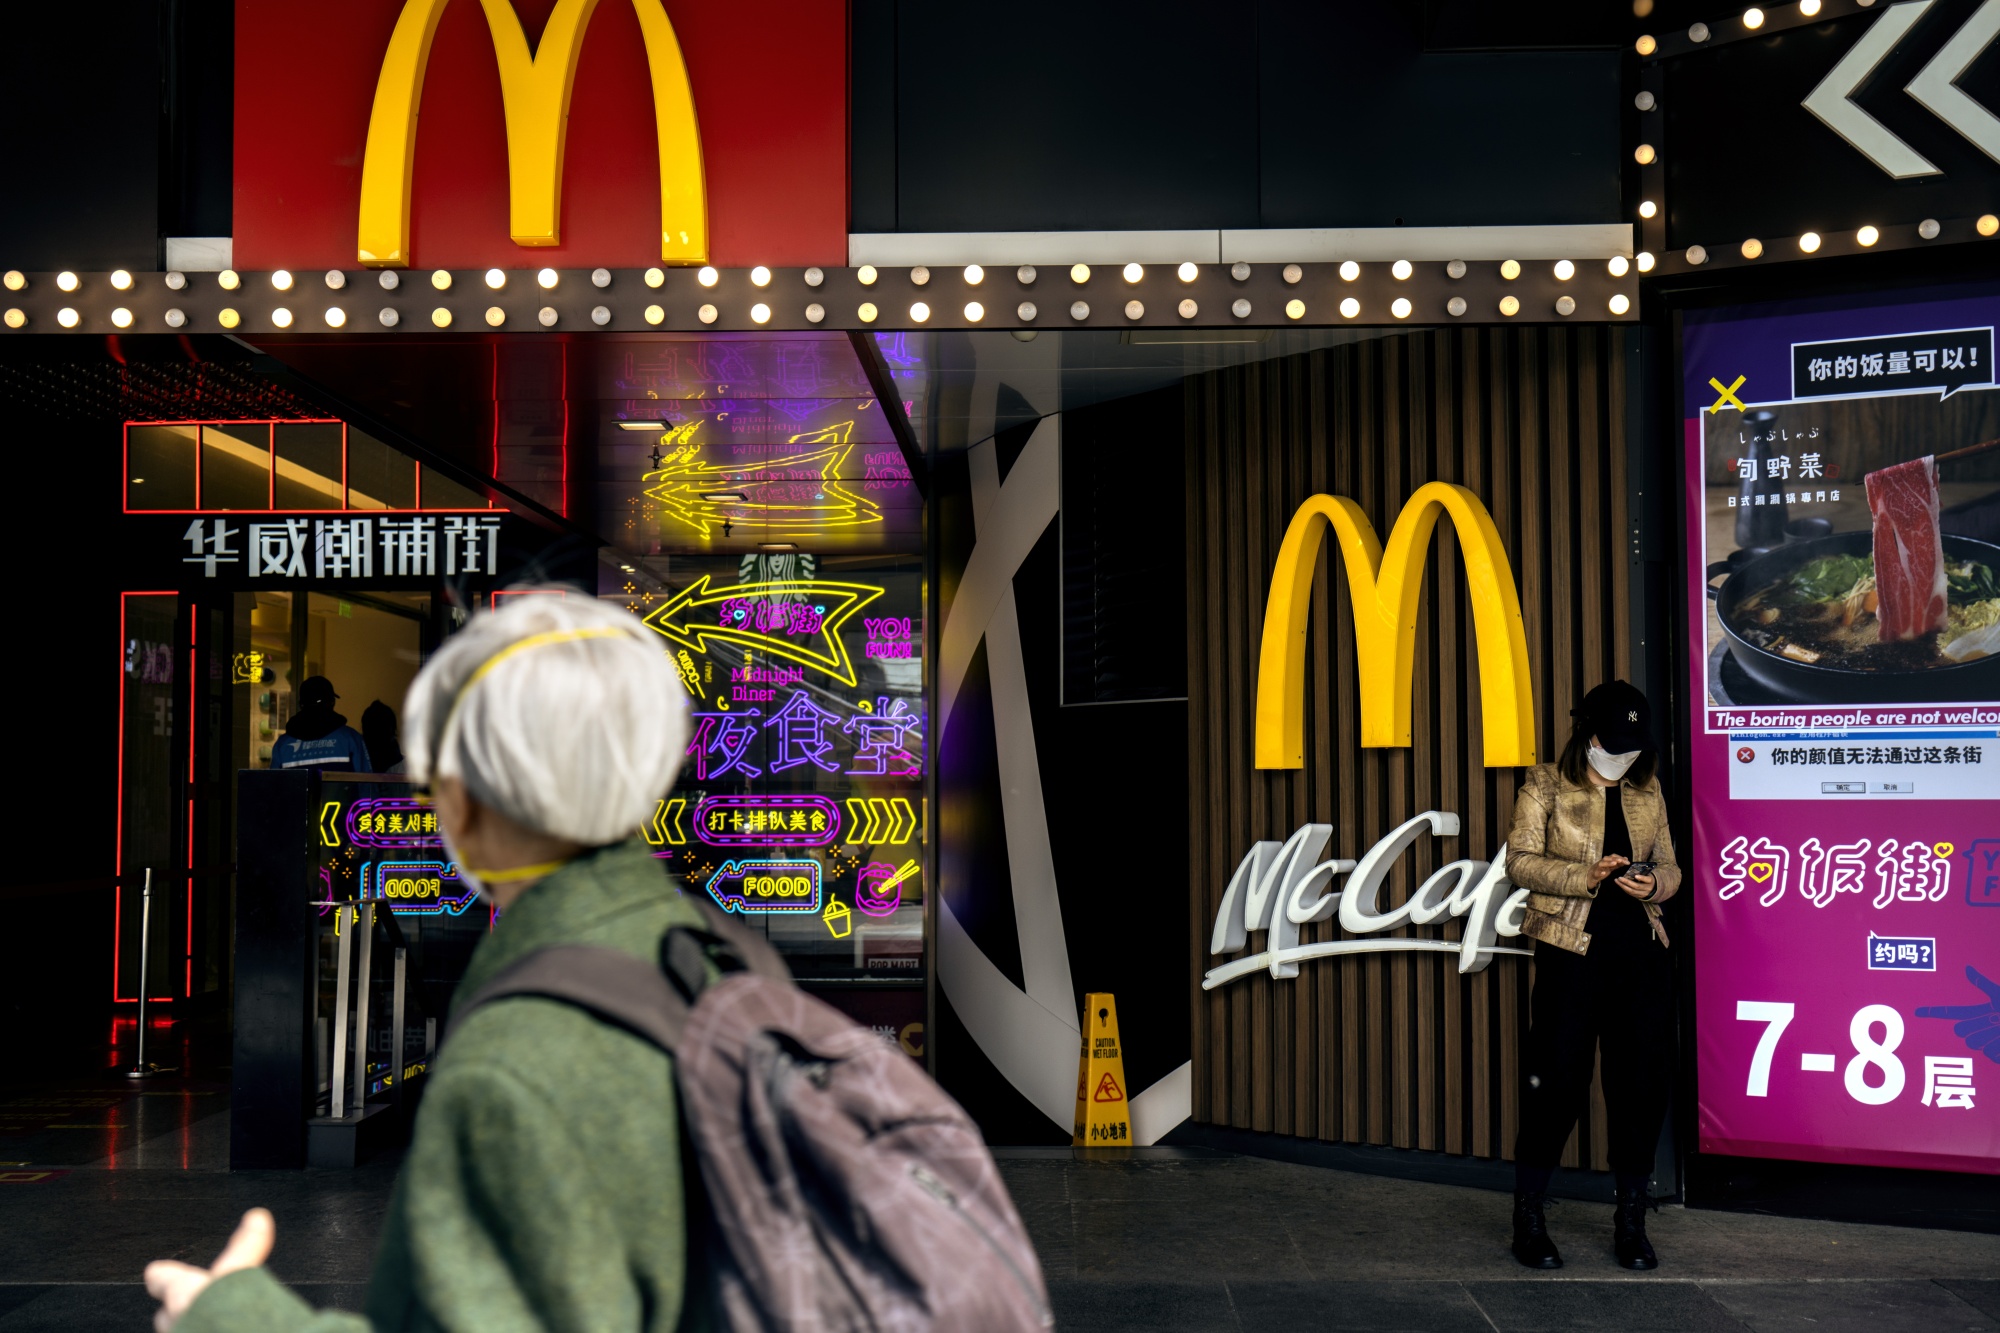 A McDonald’s restaurant in Beijing.